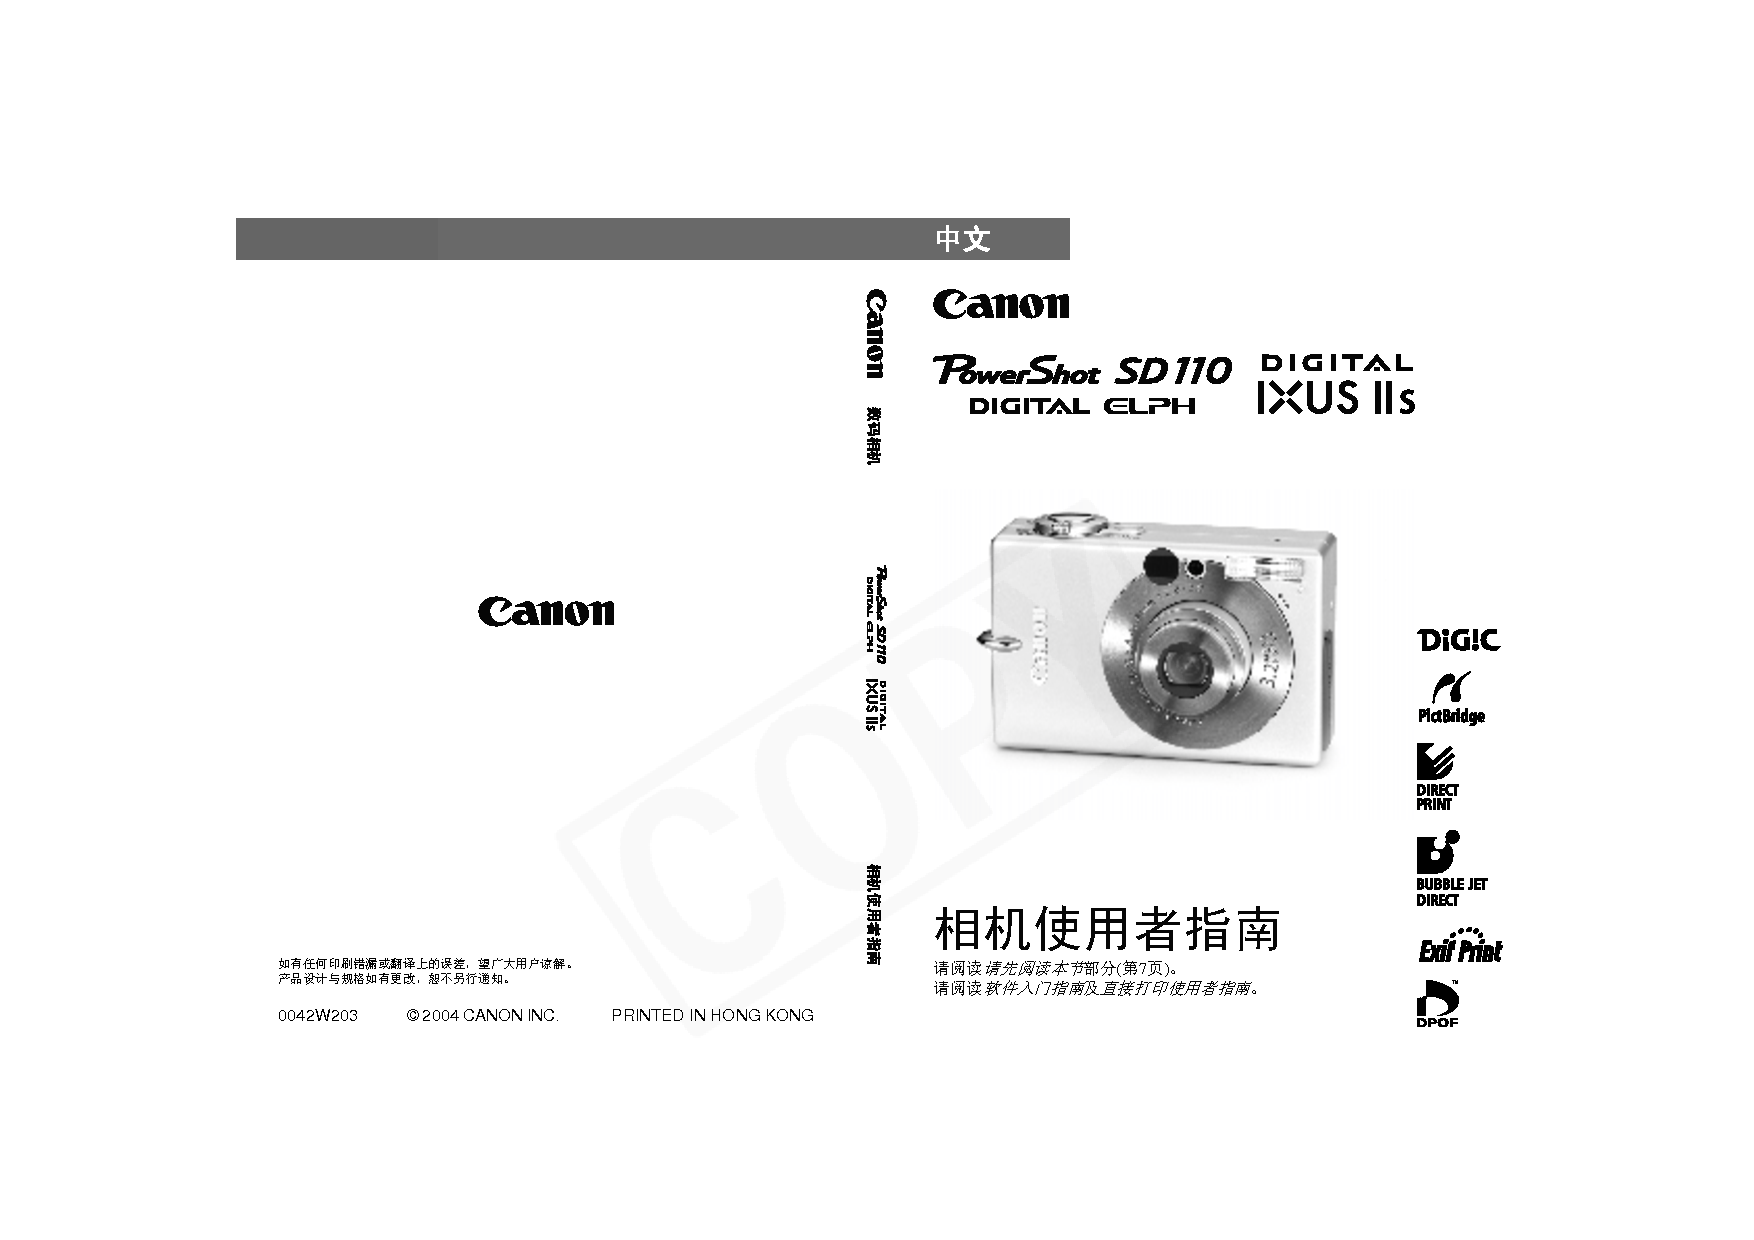 佳能 Canon IXUS IIs, PowerShot SD110 用户指南 封面